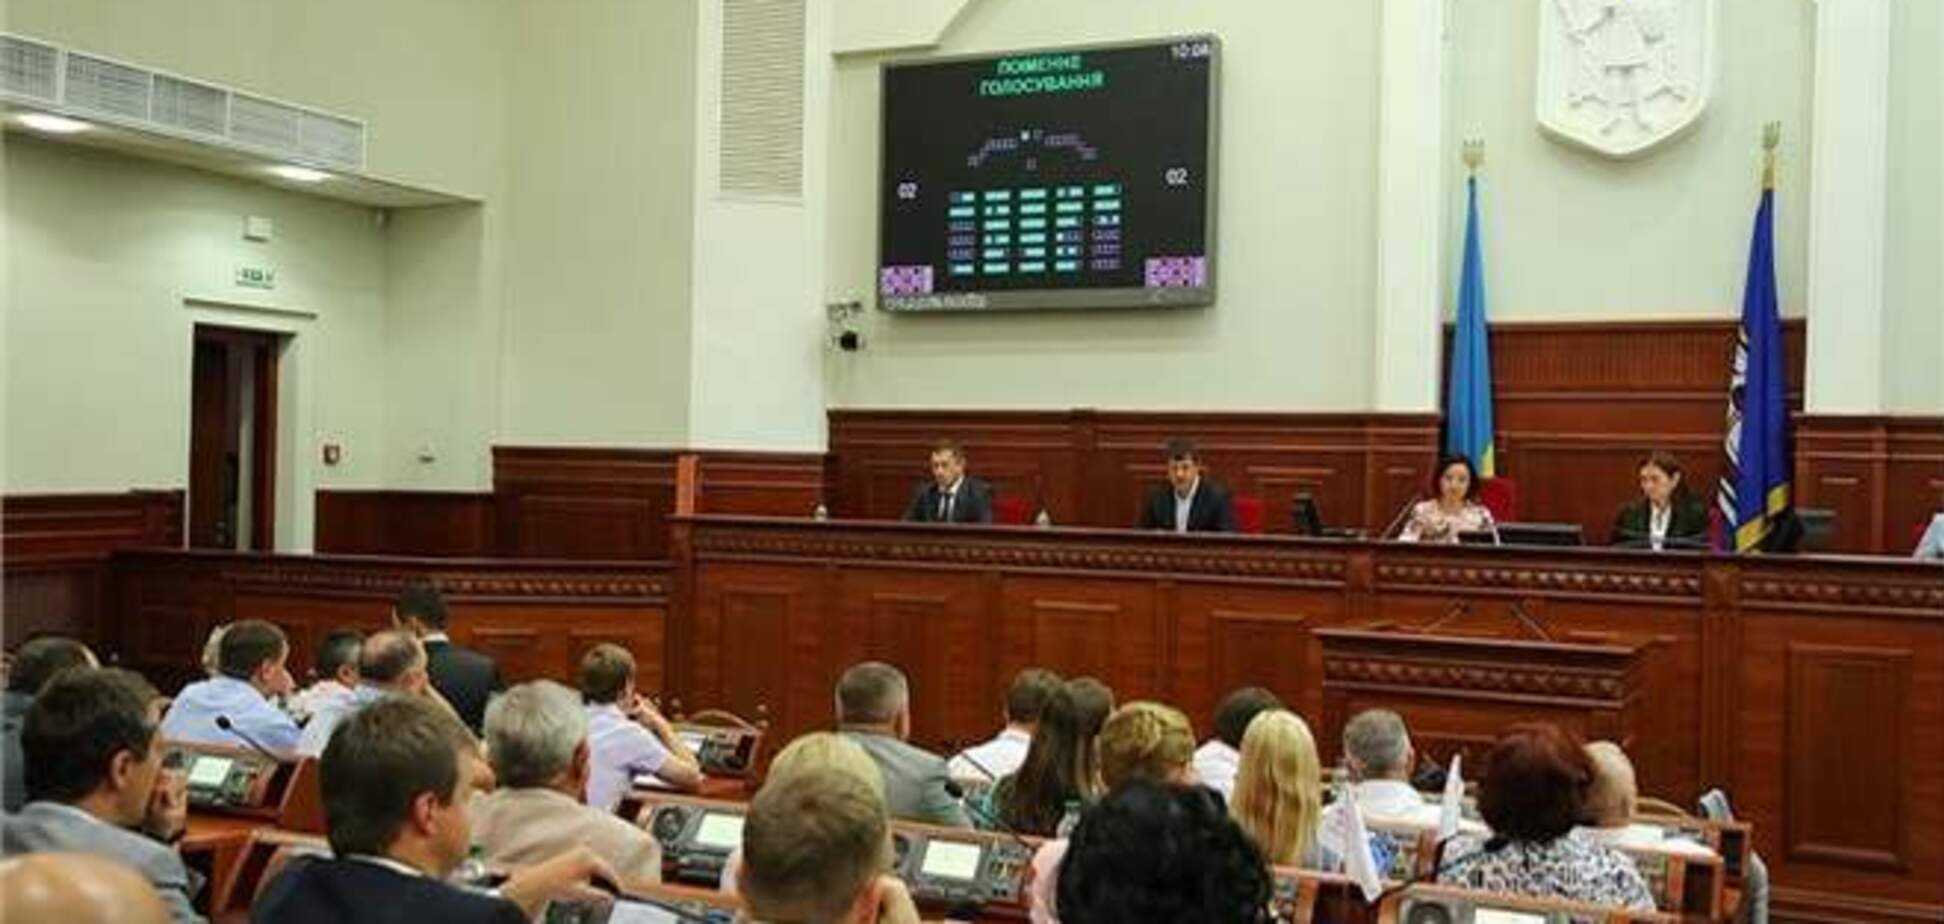 Сегодняшнее заседание легализировало Киевсовет - Телешун